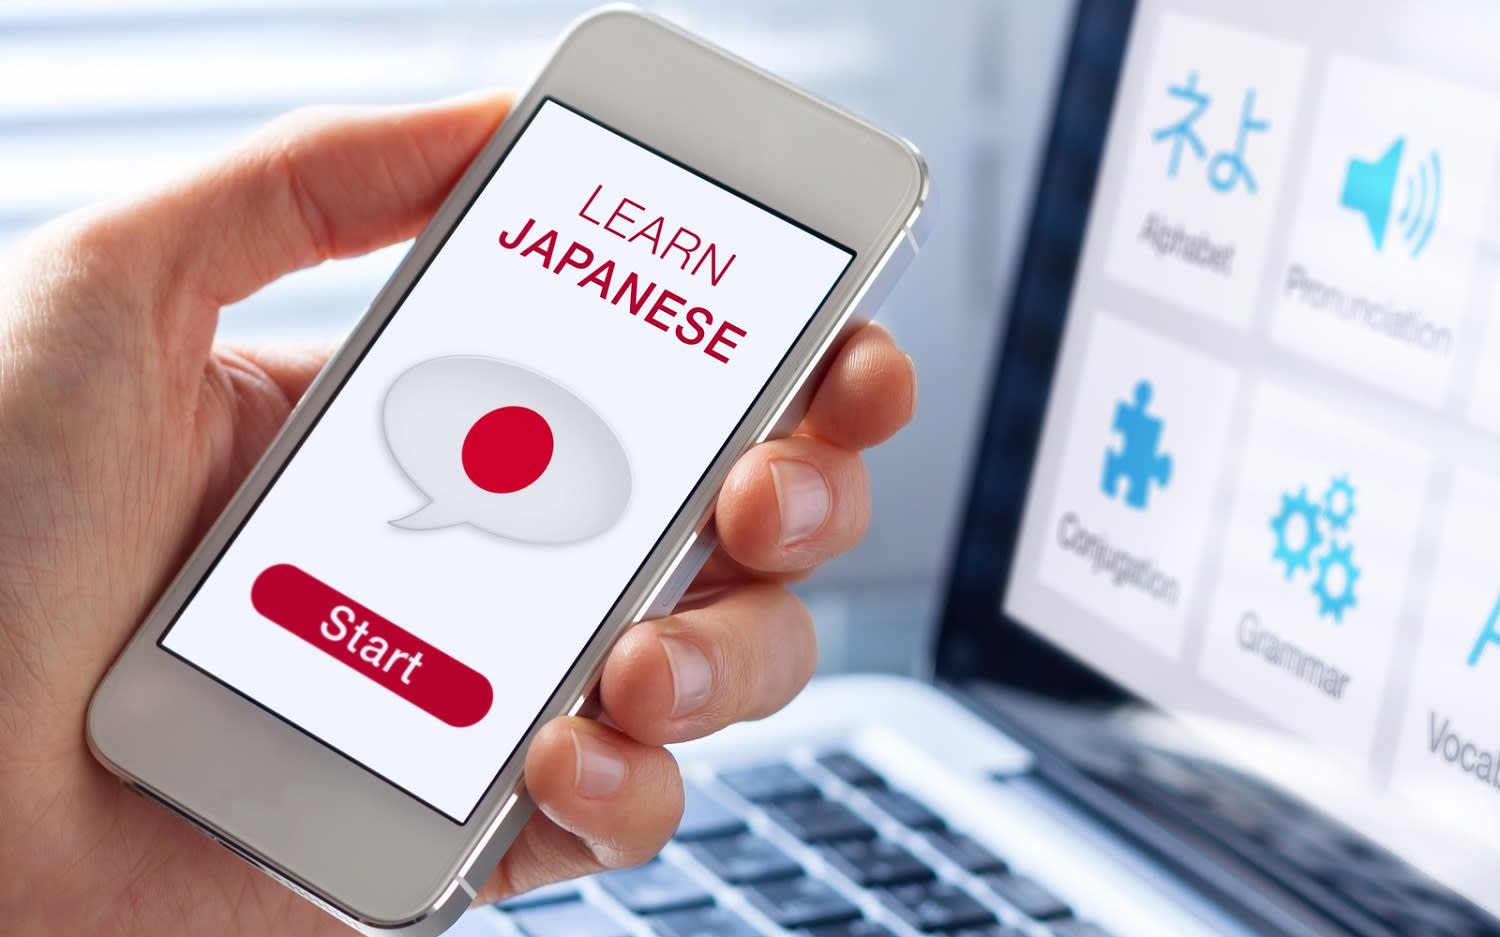 Aplikasi Belajar Bahasa Jepang Online